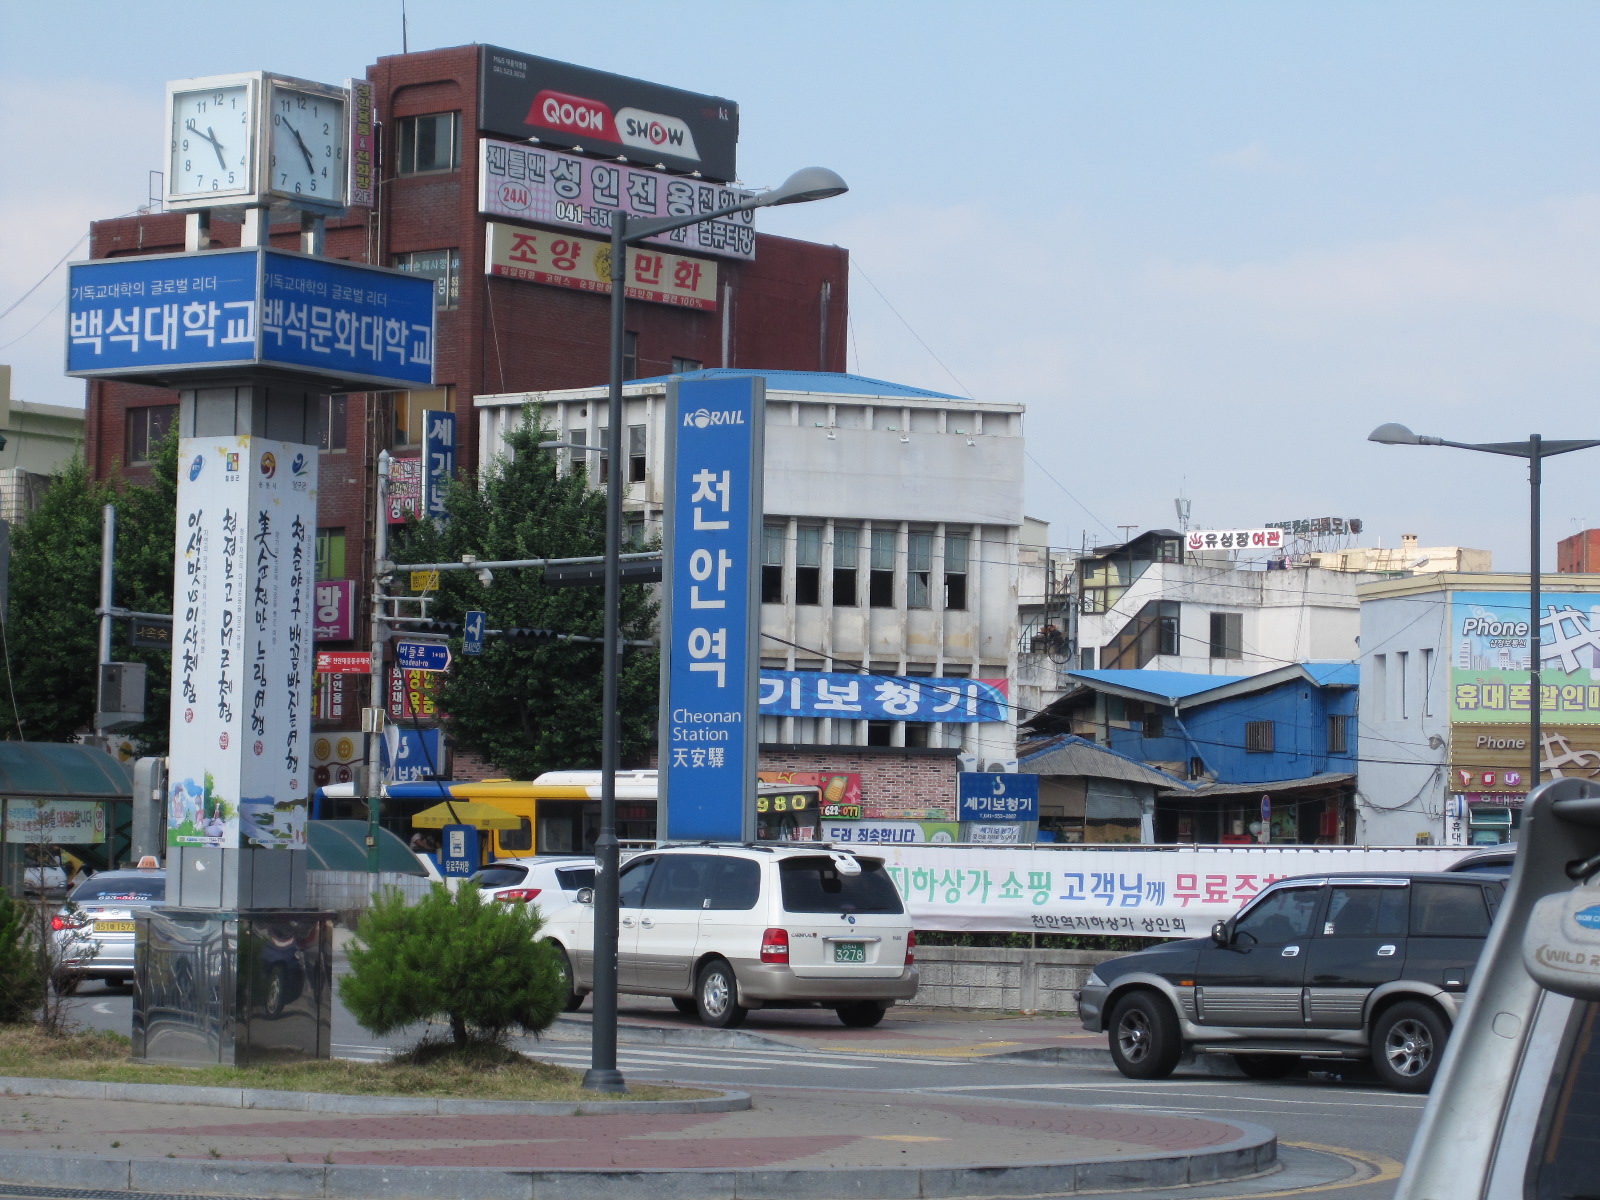 ソウル郊外の街 チョナン 天安 に行ってきました ホドクァジャを食べ比べ ソウルナビ